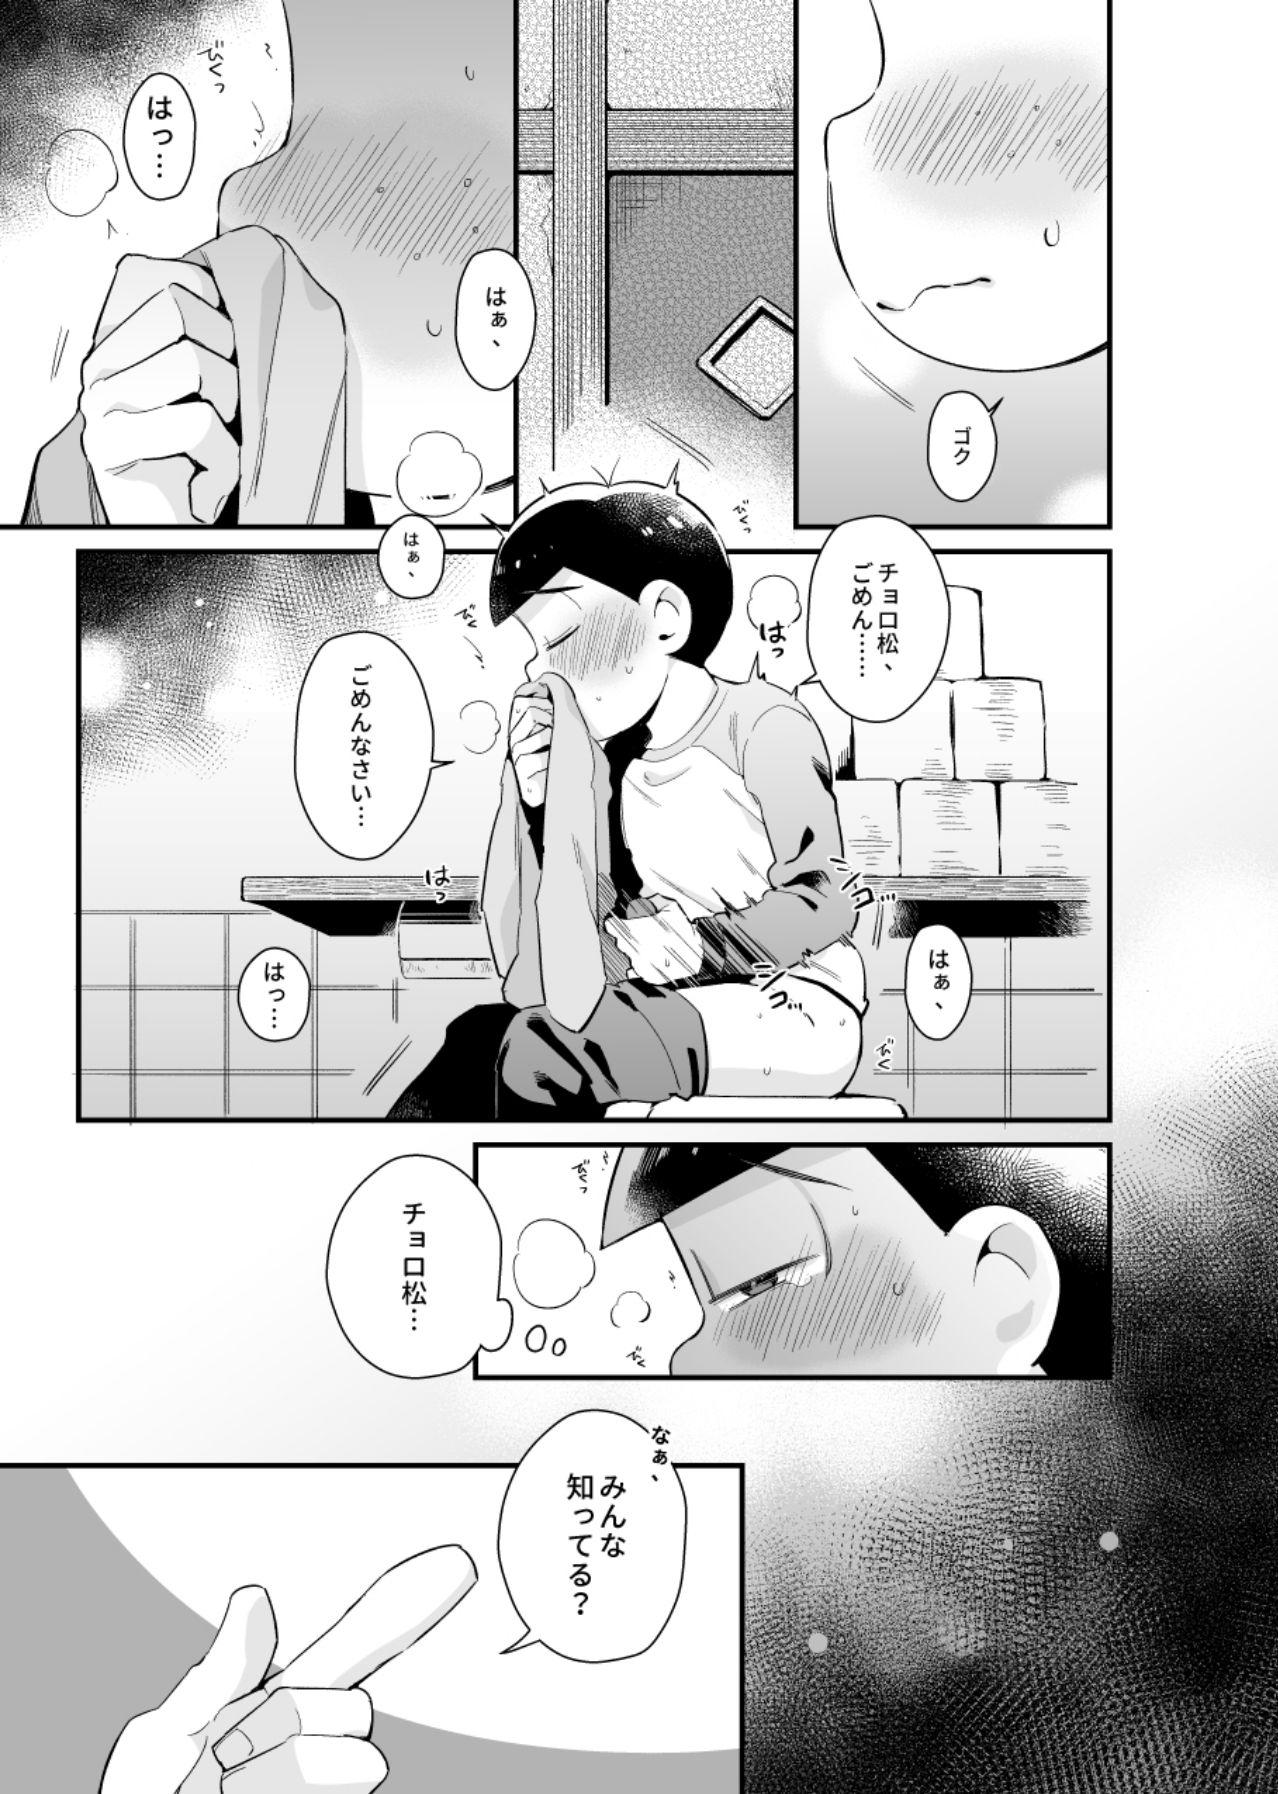 Pussylicking Bokutachi no shishunki - Osomatsu-san Bribe - Page 8